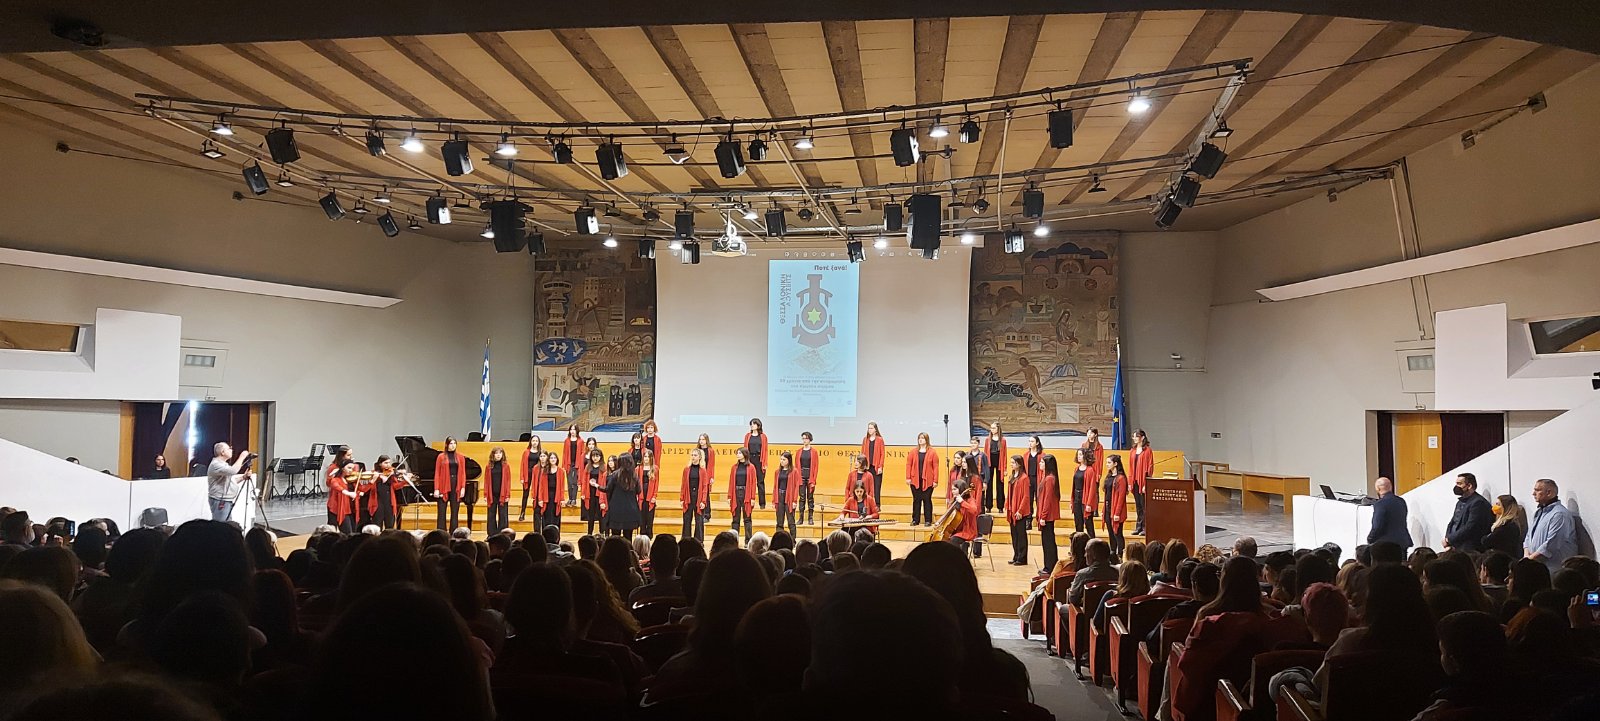 Συμμετοχή του σχολείου  μας στην εκδήλωση «Ποτέ ξανά Θεσσαλονίκη-Αουσβίτς 80 χρόνια από την αναχώρηση του πρώτου συρμού»